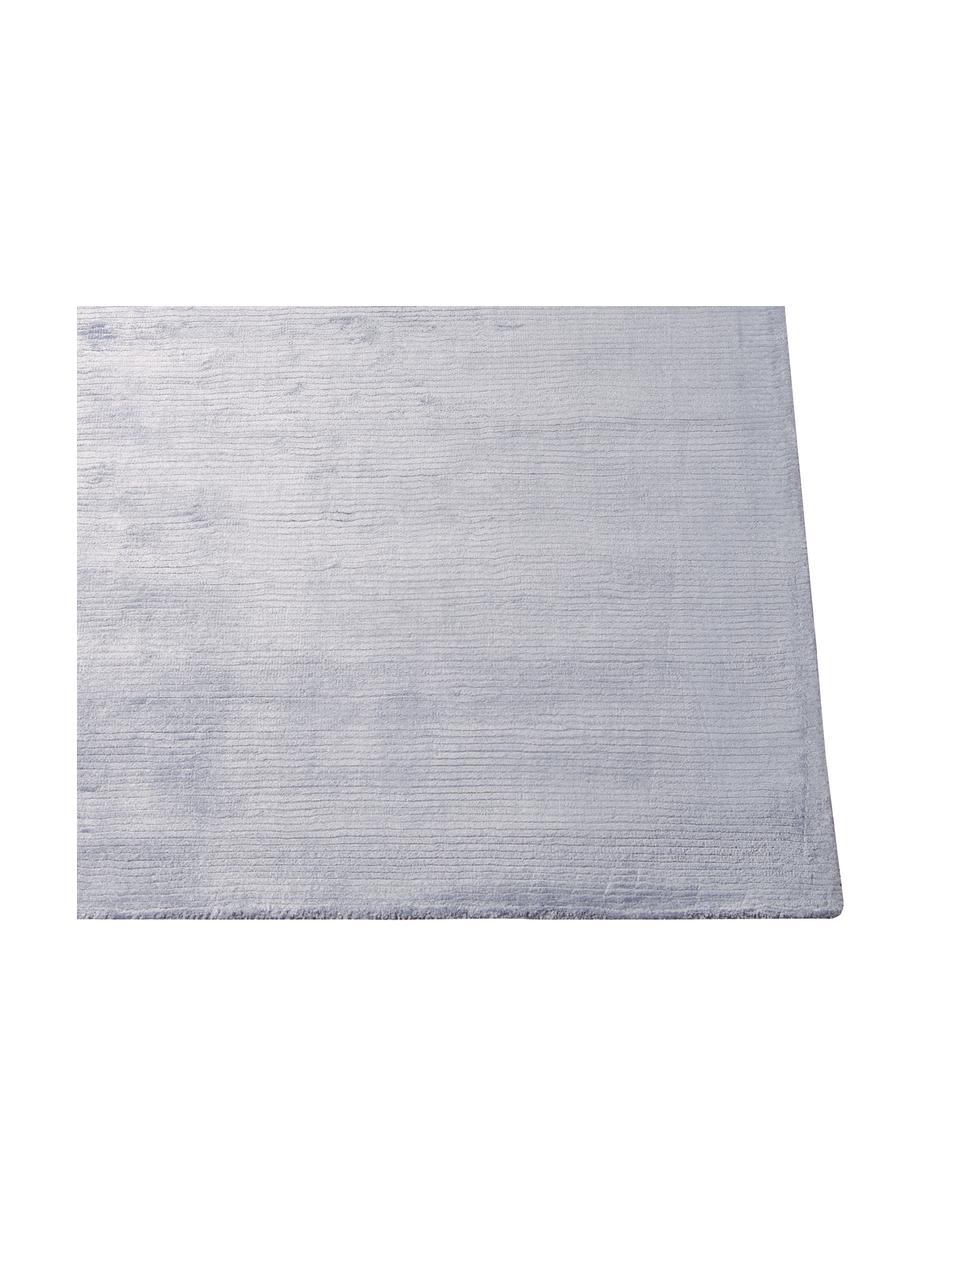 Ręcznie tkany chodnik Lunar, Srebrny, szary, S 69 x D 226 cm